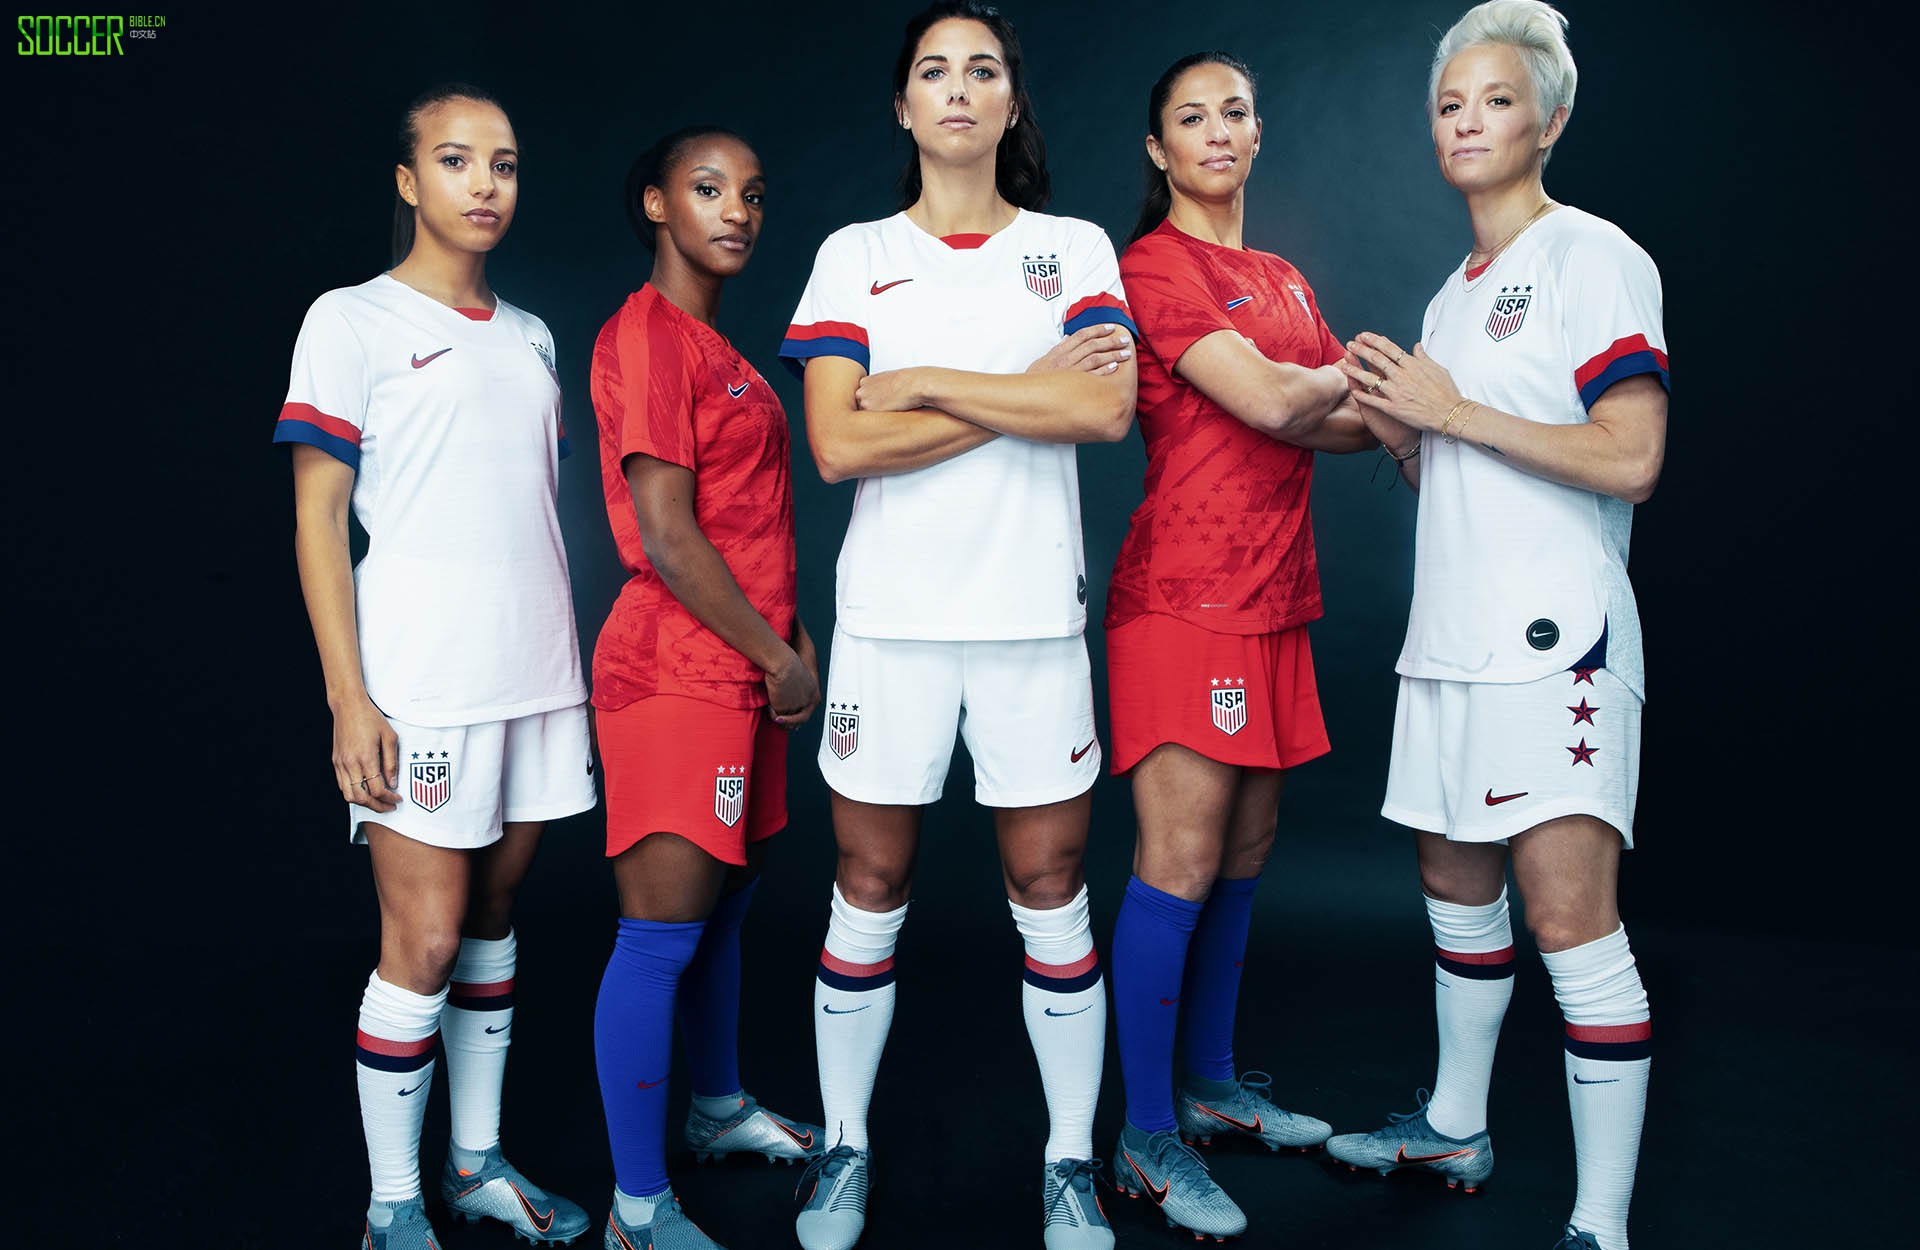 穿球衣的女孩最美 耐克在巴黎为14支国家队发布全新战袍 - Nike_耐克足球鞋 - SoccerBible中文站_足球鞋_PDS情报站